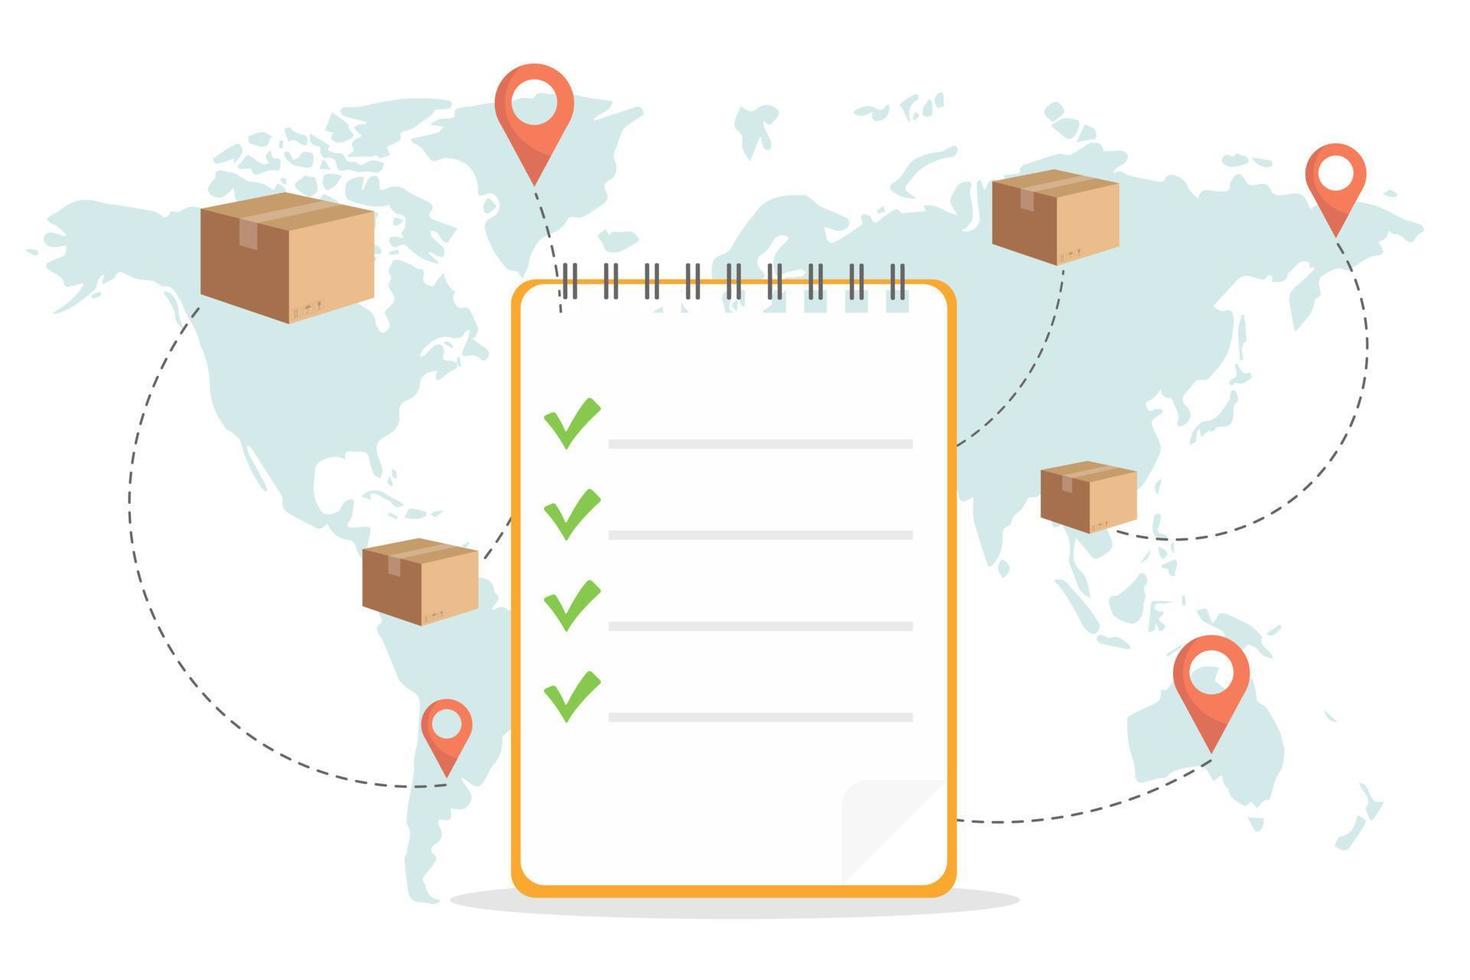 uitgevoerde bestellingen, snelle pakketbezorging. wereldwijd logistiek netwerk. wereldkaart met vracht in beweging. vector